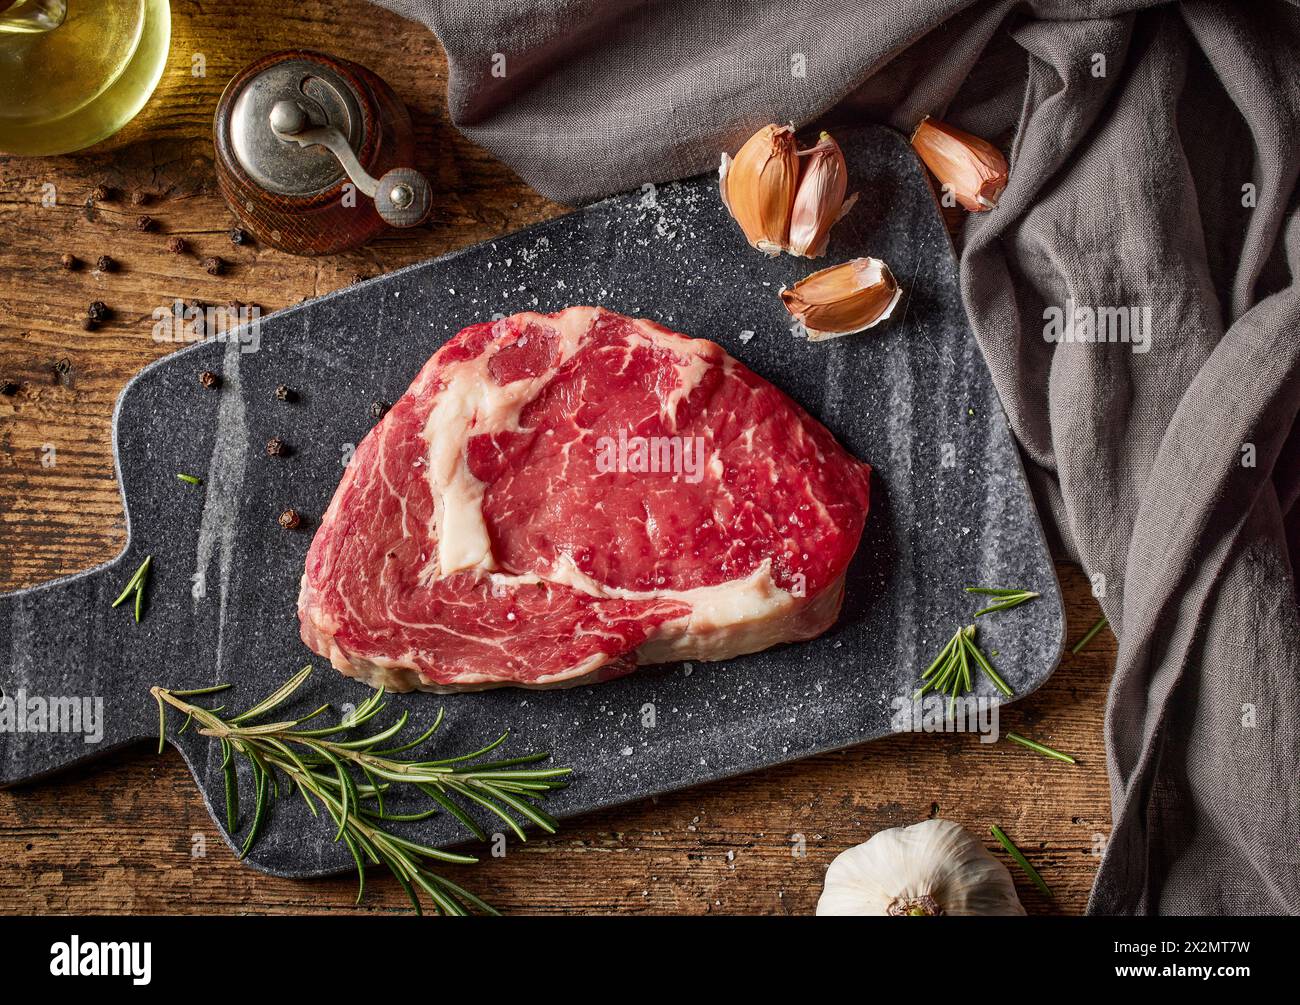 viande de bifteck de bœuf crue fraîche sur la table de cuisine en bois, vue de dessus Banque D'Images